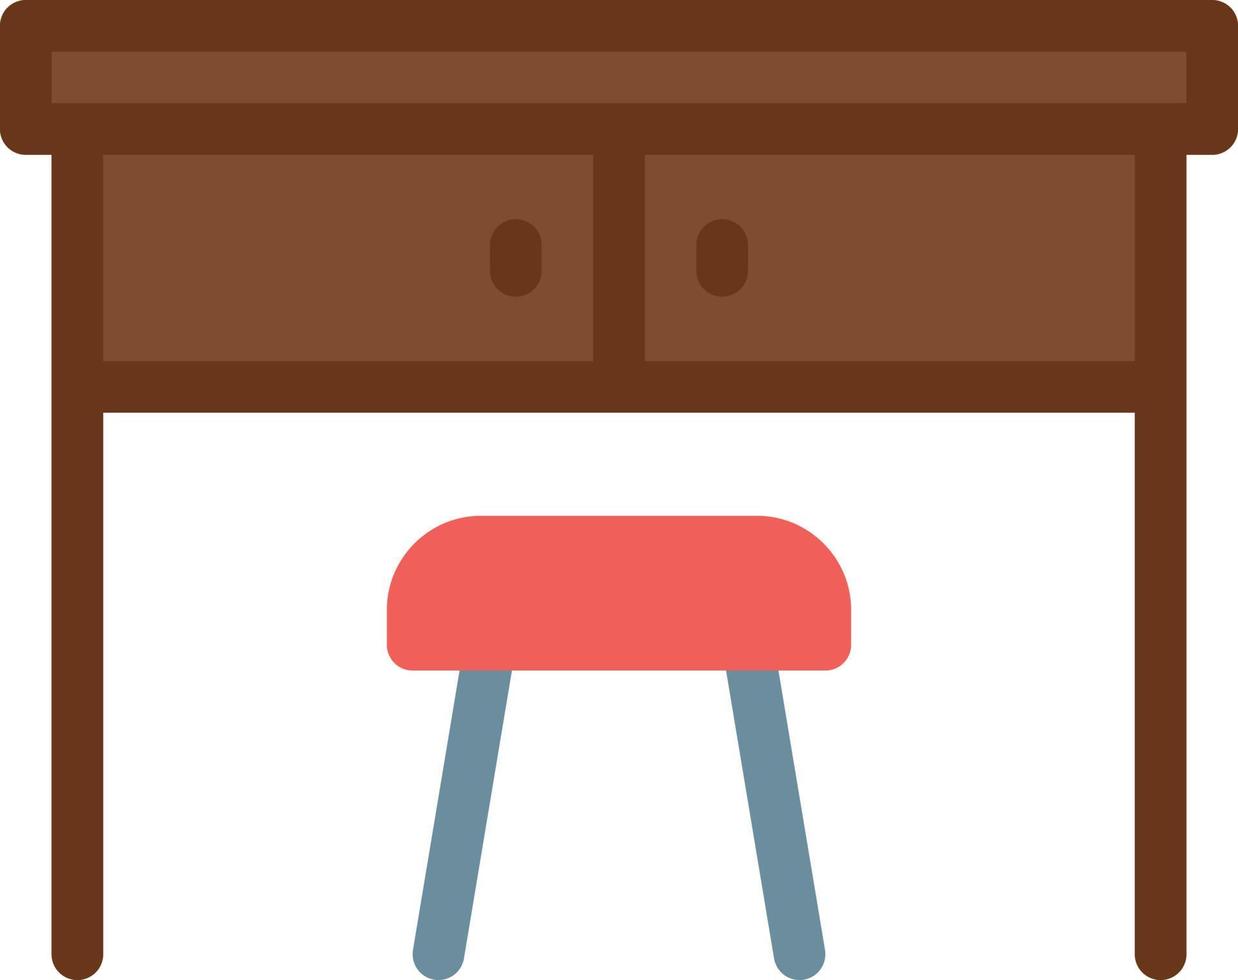 bord vektor illustration på en bakgrund. premium kvalitet symboler. vektor ikoner för koncept och grafisk design.